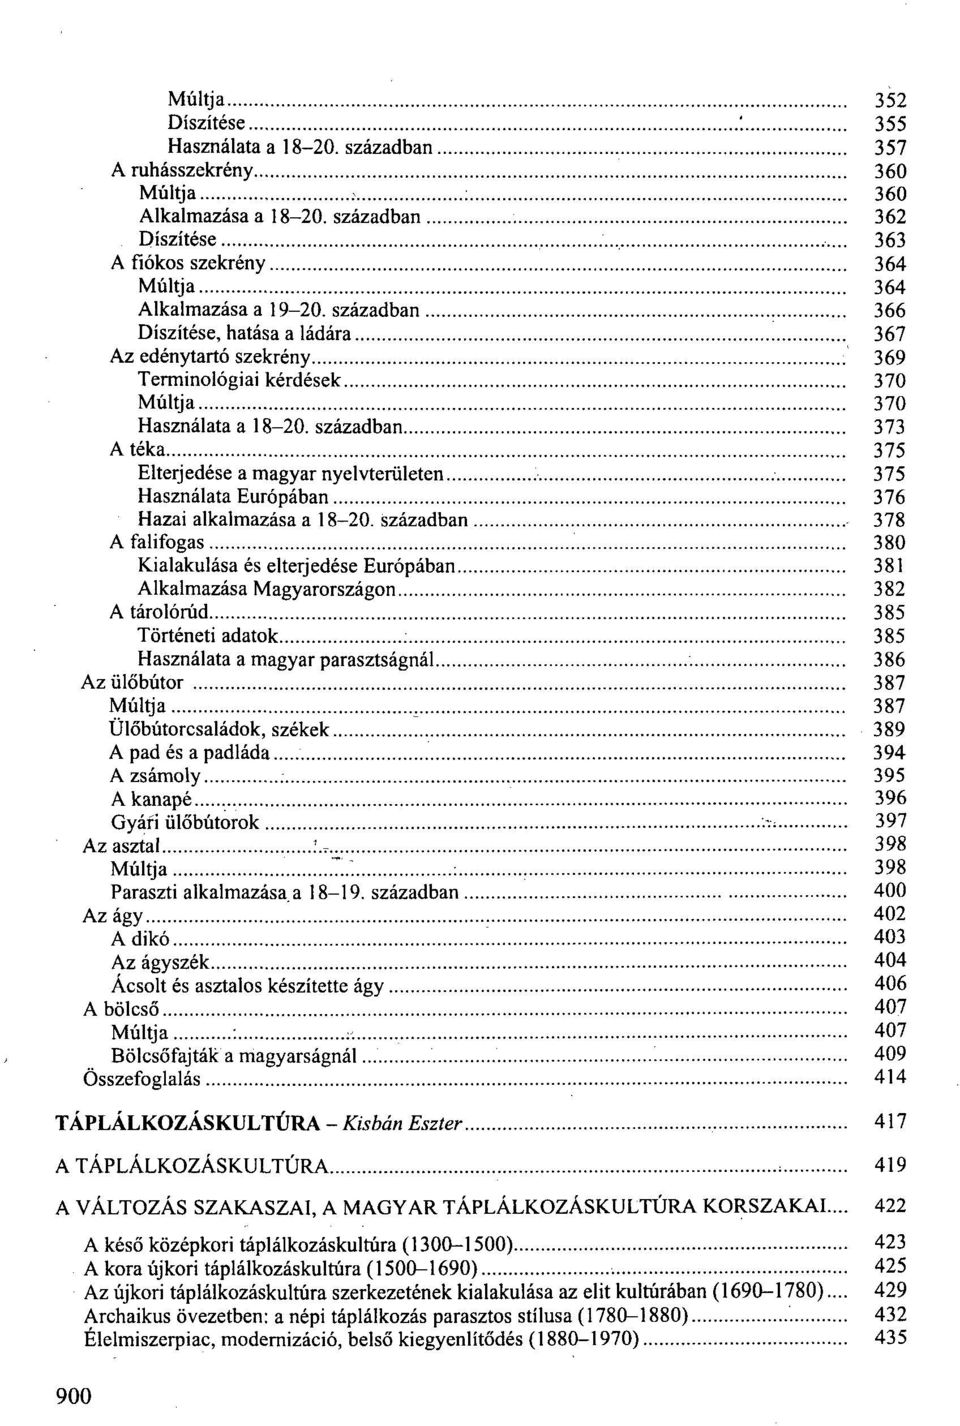 században 373 A téka 375 Elterjedése a magyar nyelvterületen 375 Használata Európában 376 Hazai alkalmazása a 18-20. században 378 A falifogas.